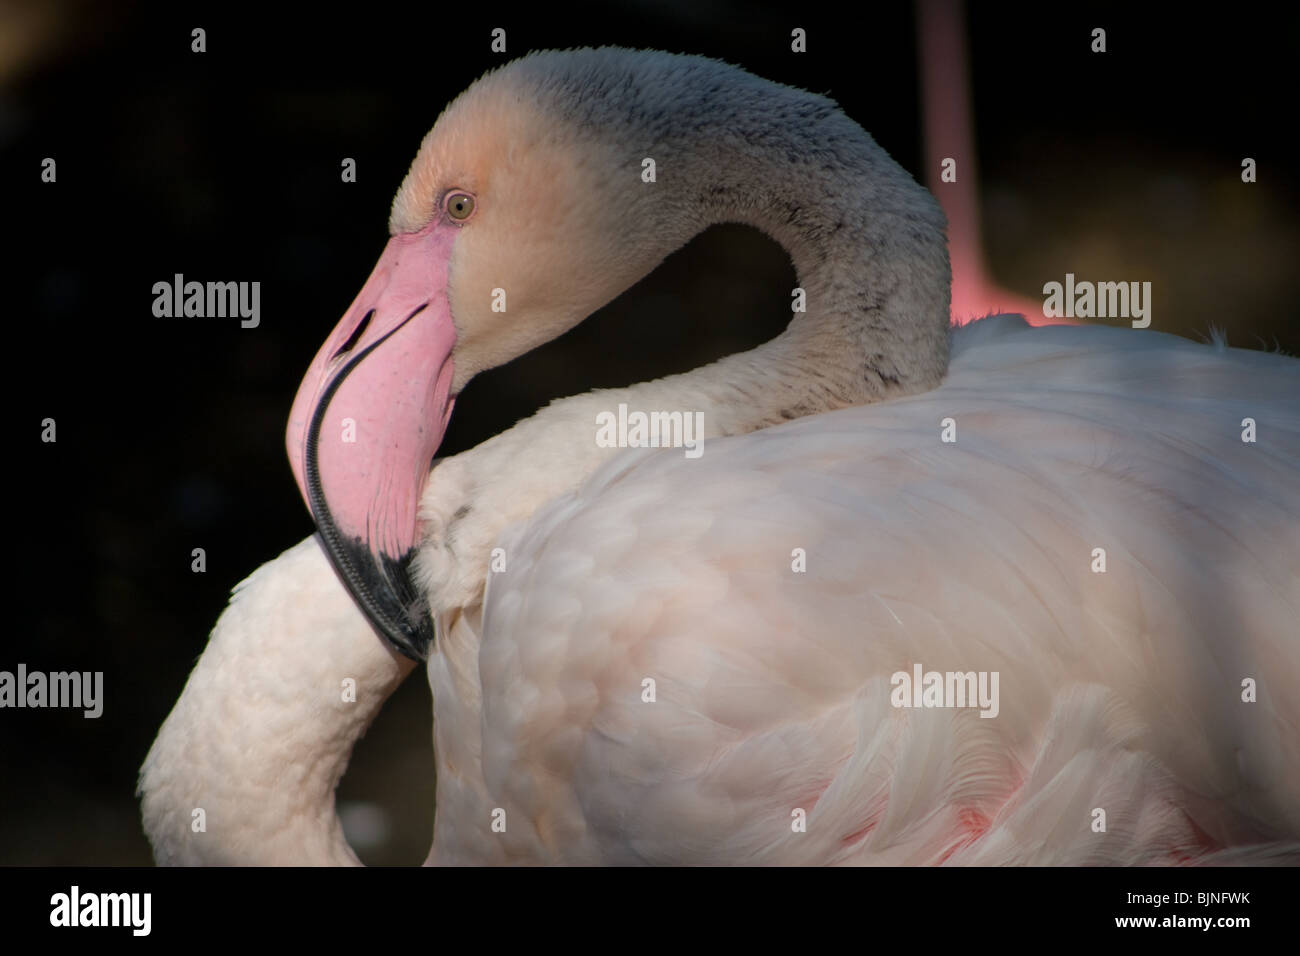 Flamingo - rosa o colore rossastro proviene da fonti ricche di pigmenti carotenoidi ln le alghe e piccoli crostacei che mangiano. Foto Stock